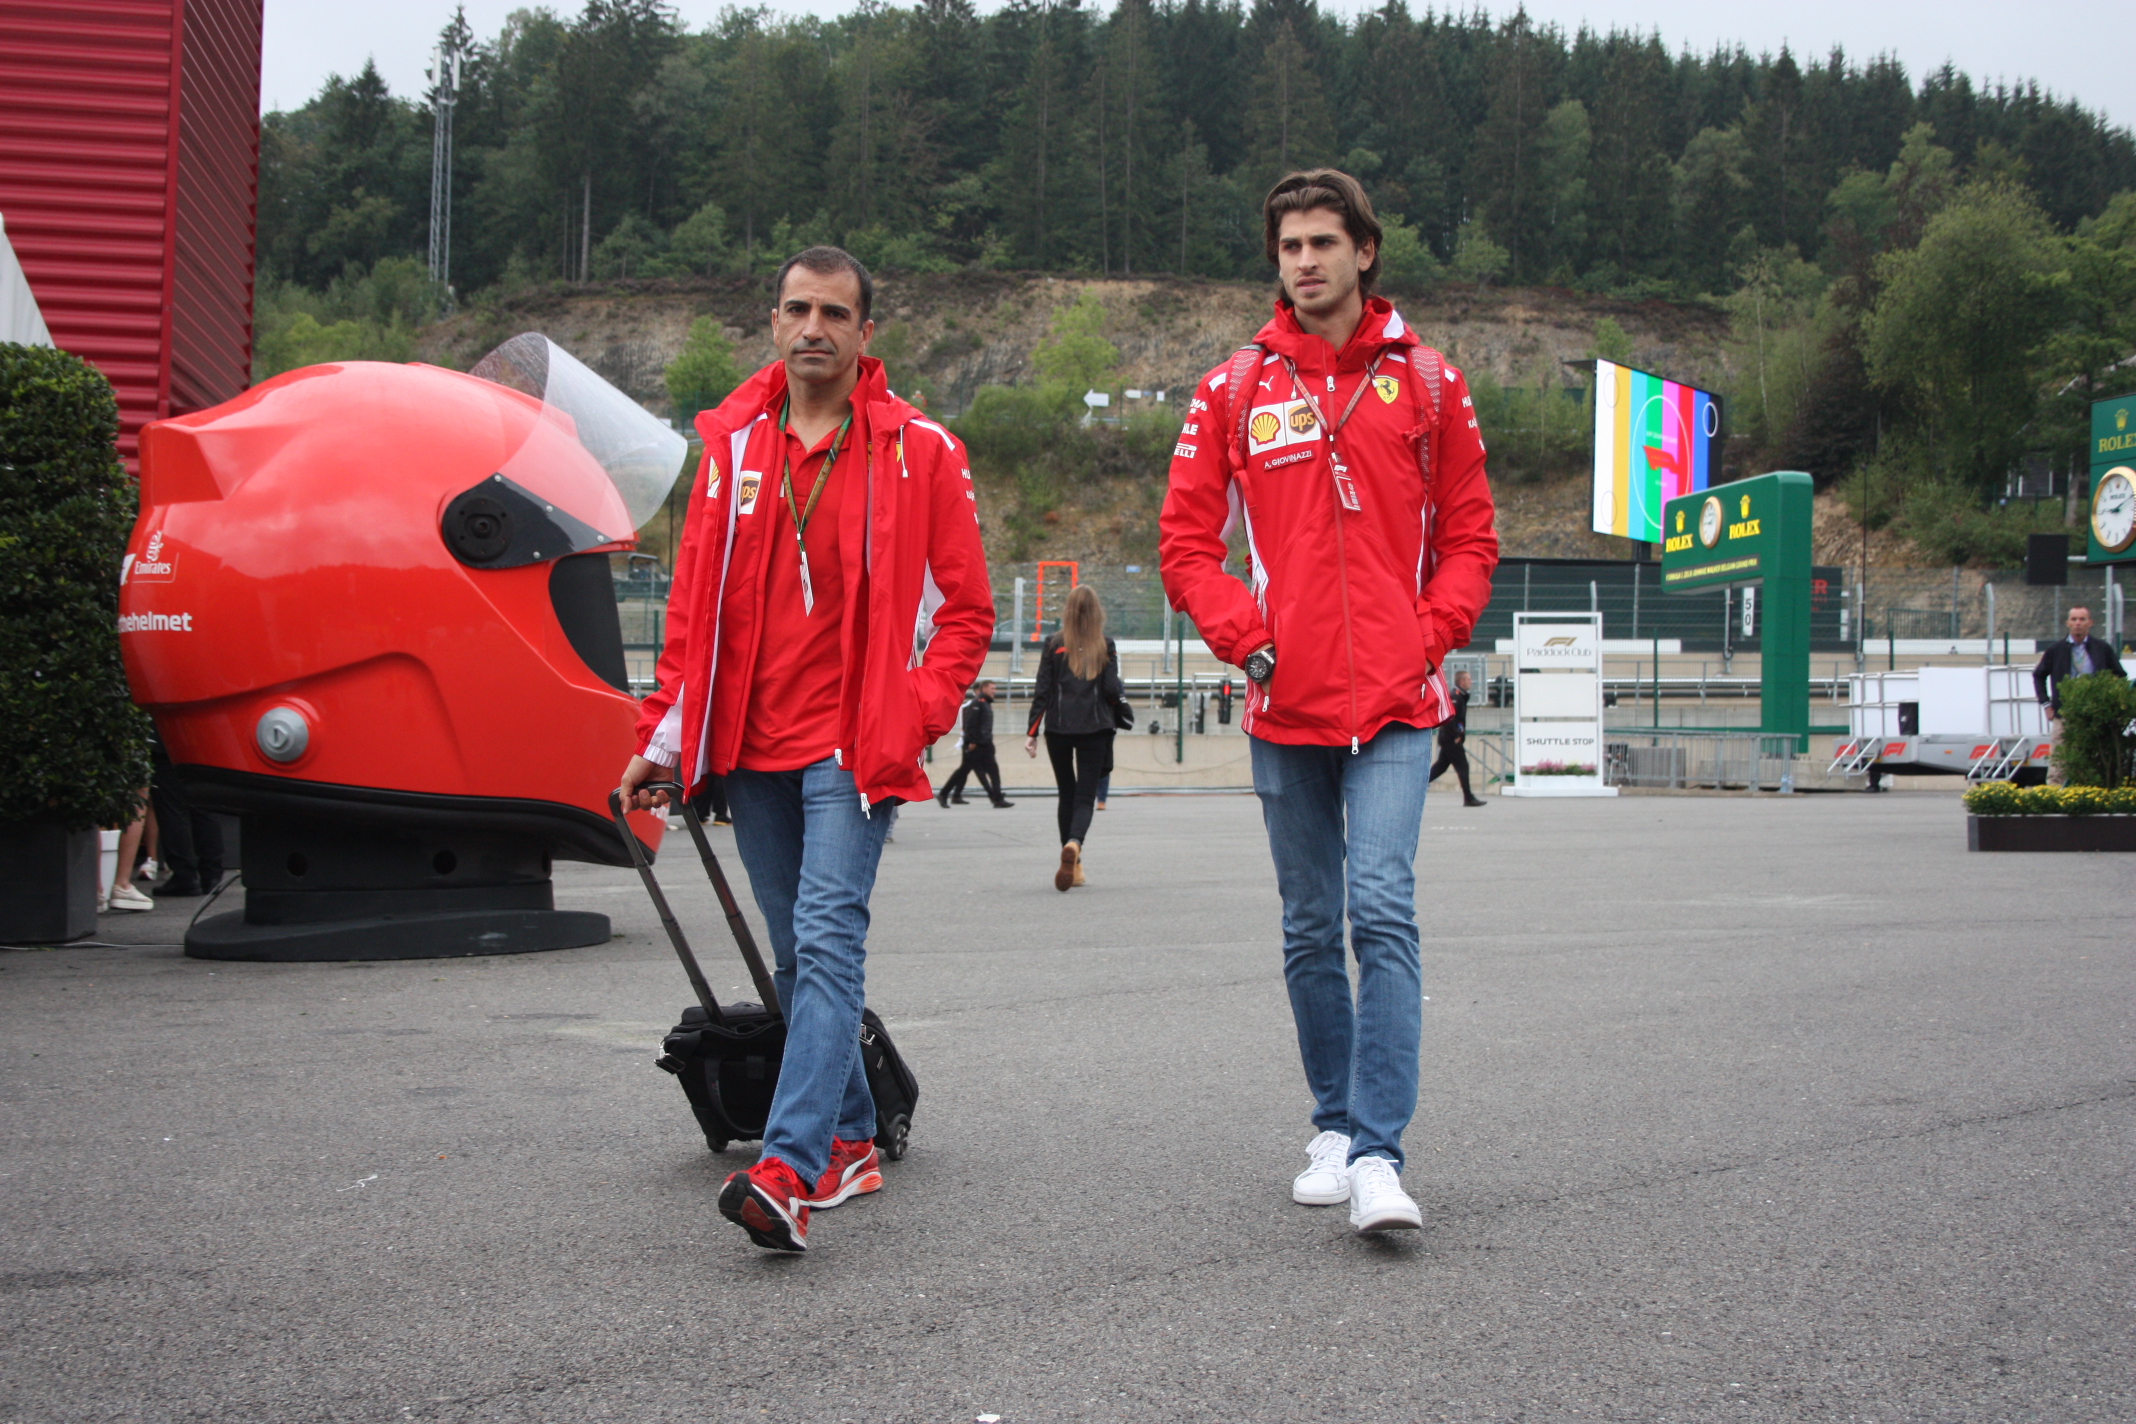 Á-propos Monza a Ferrari: Dva spolupracovníci Scuderie, kteří mohou o kokpitu rudého vozu jen snít – Marc Gene a Antonio Giovinazzi